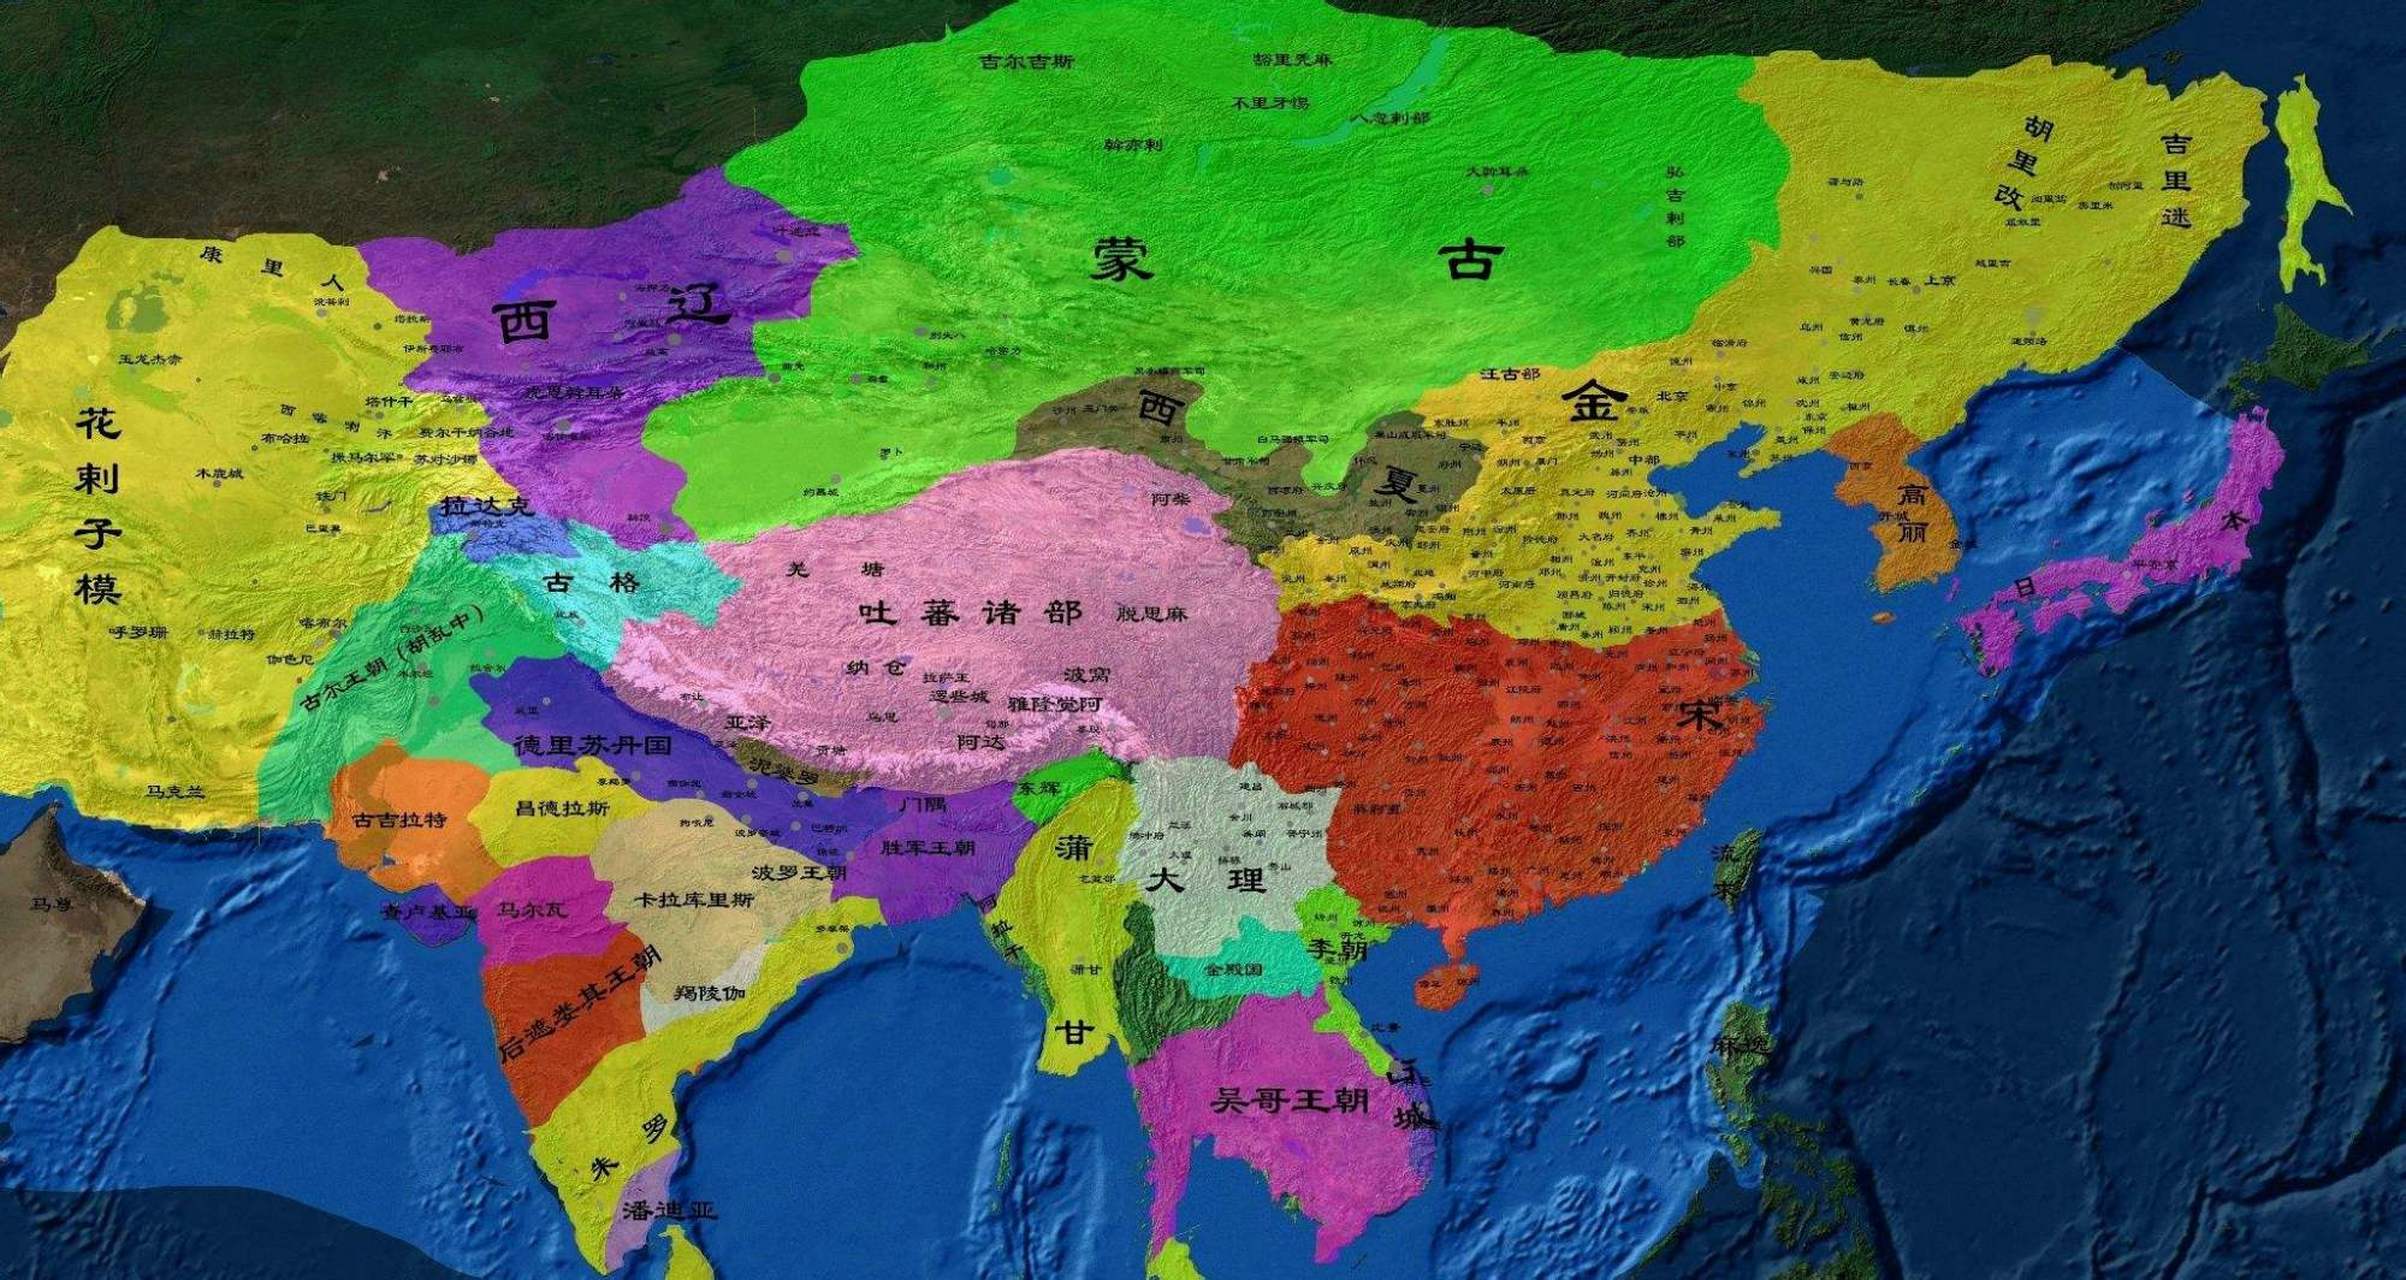 成吉思汗正版版图,看看元朝中国国土面积有多大,1372万平方公里